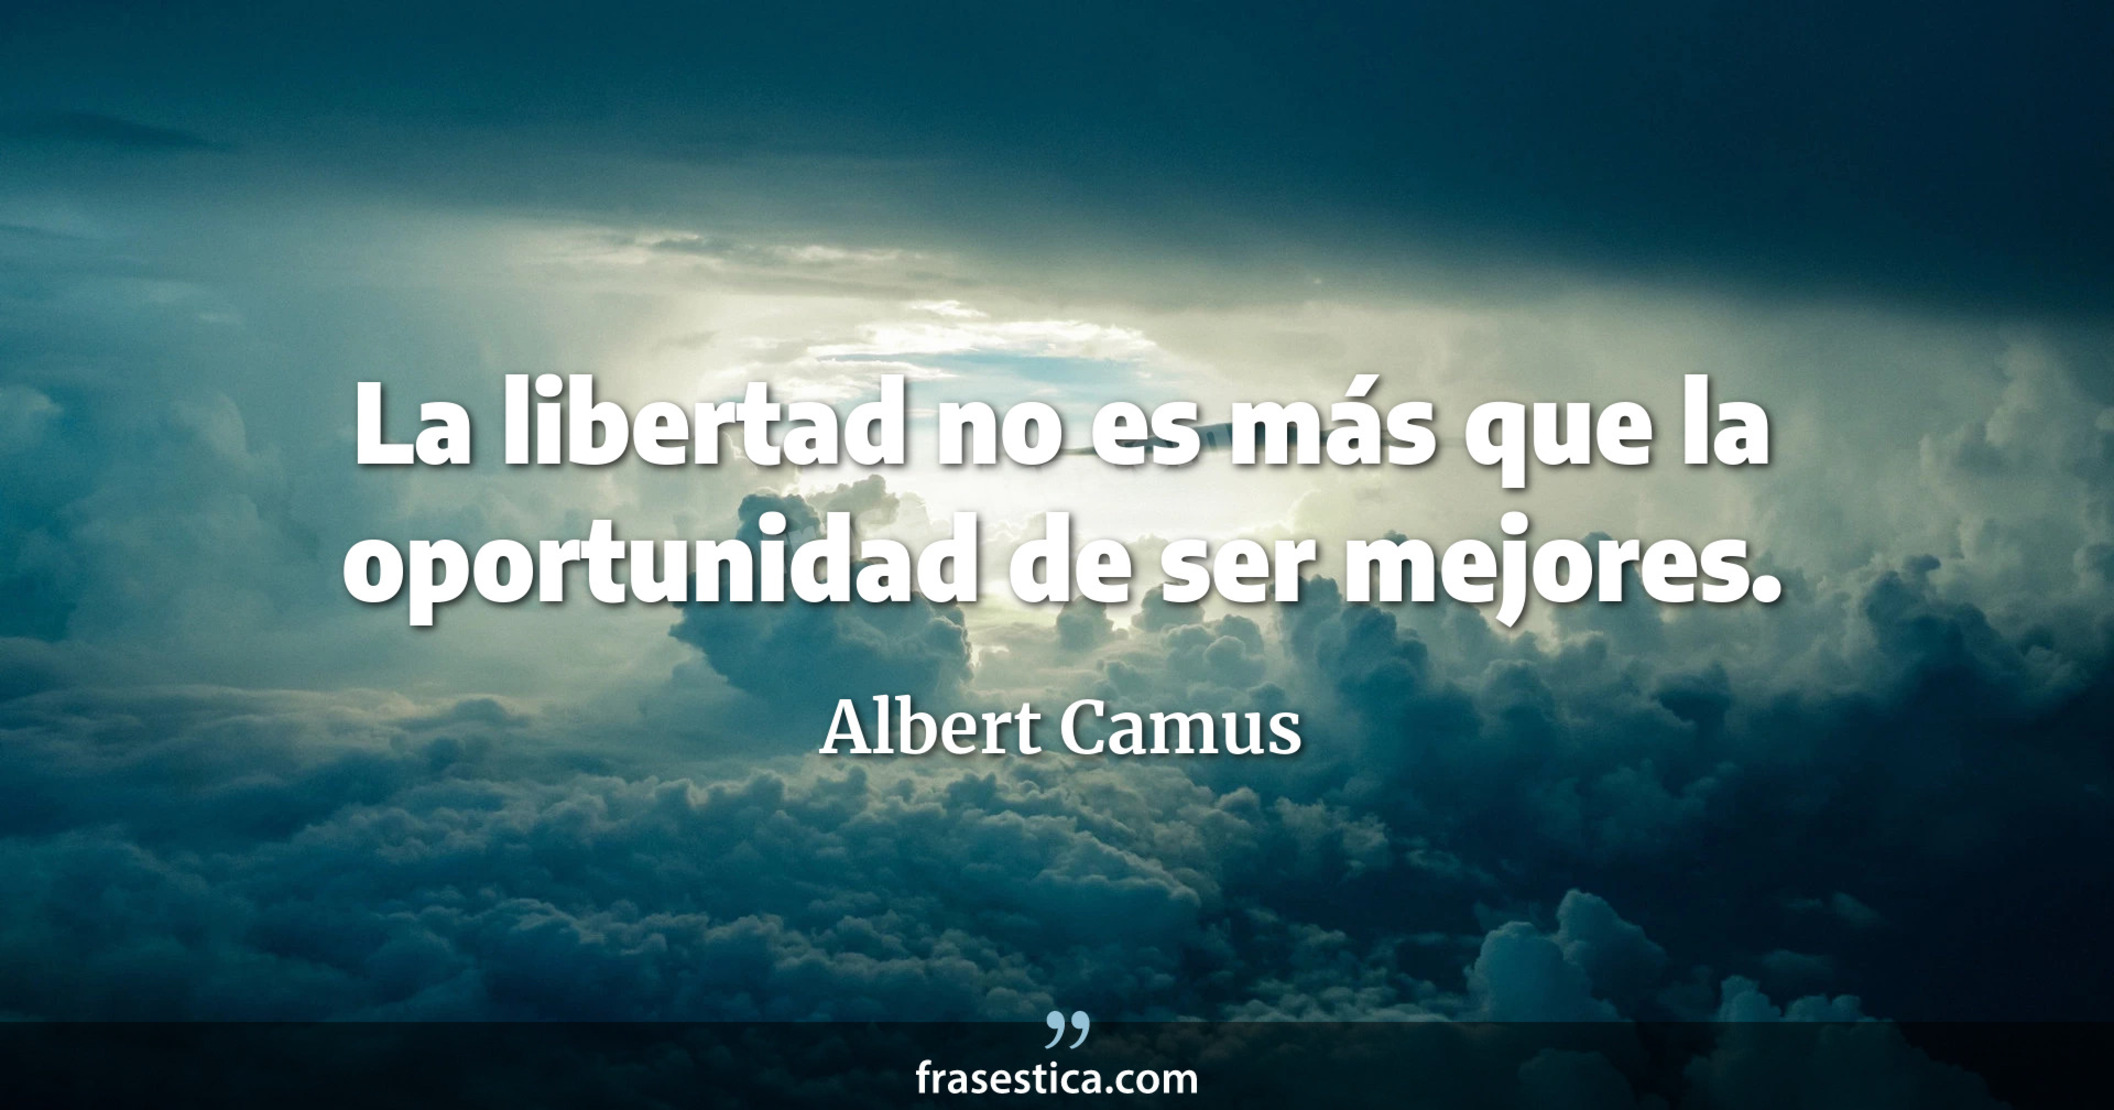 La libertad no es más que la oportunidad de ser mejores. - Albert Camus